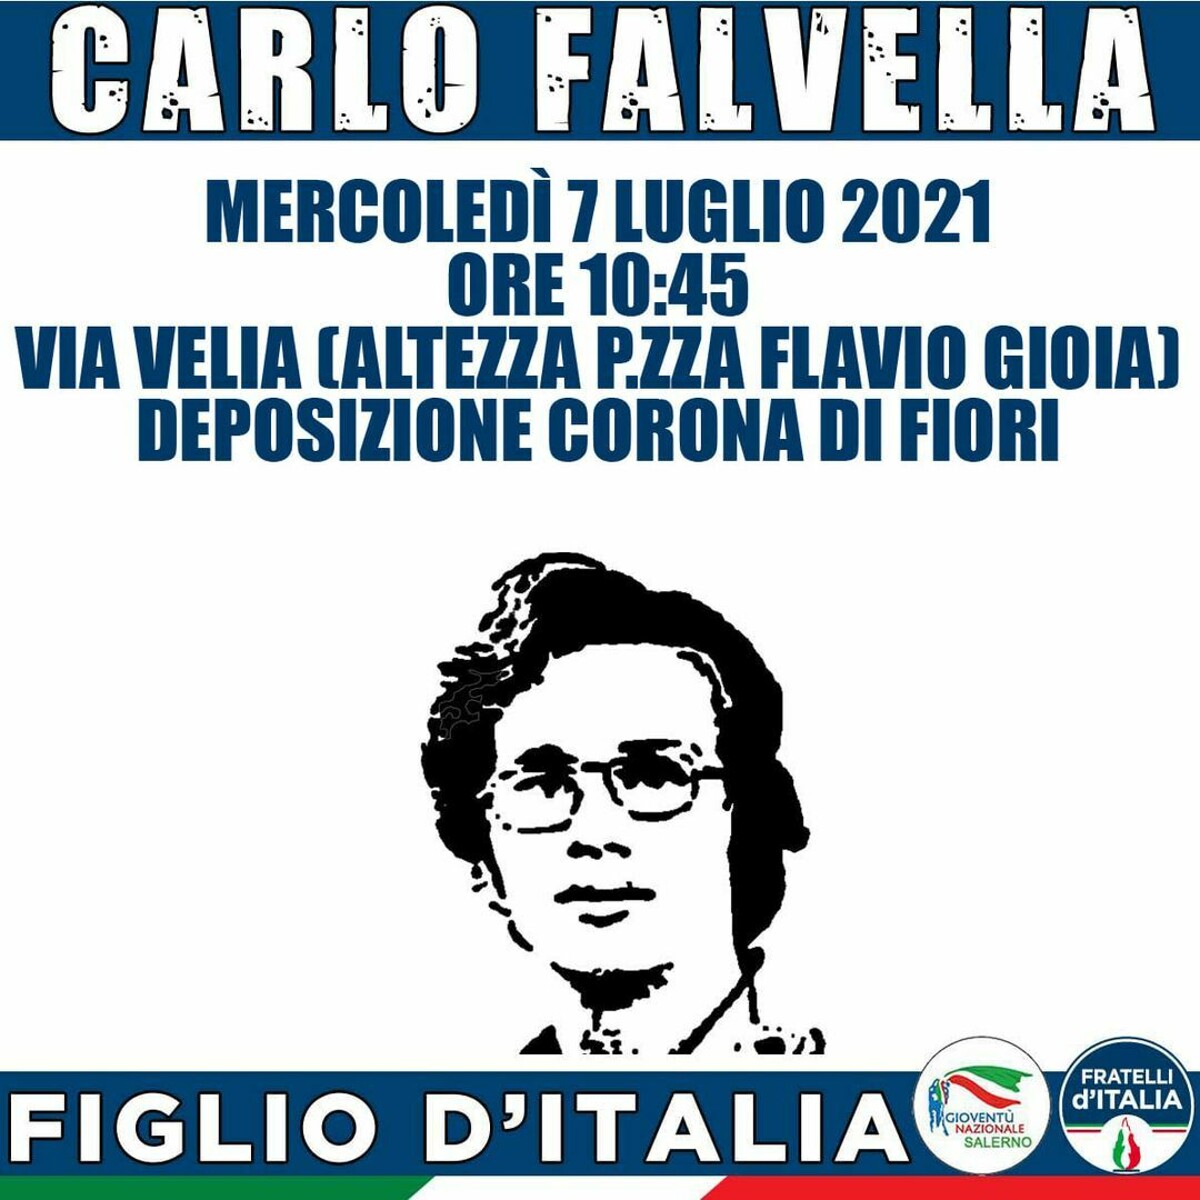 “A Carlo, Figlio d’Italia”, FdI e Gioventù Nazionale commemorano Falvella